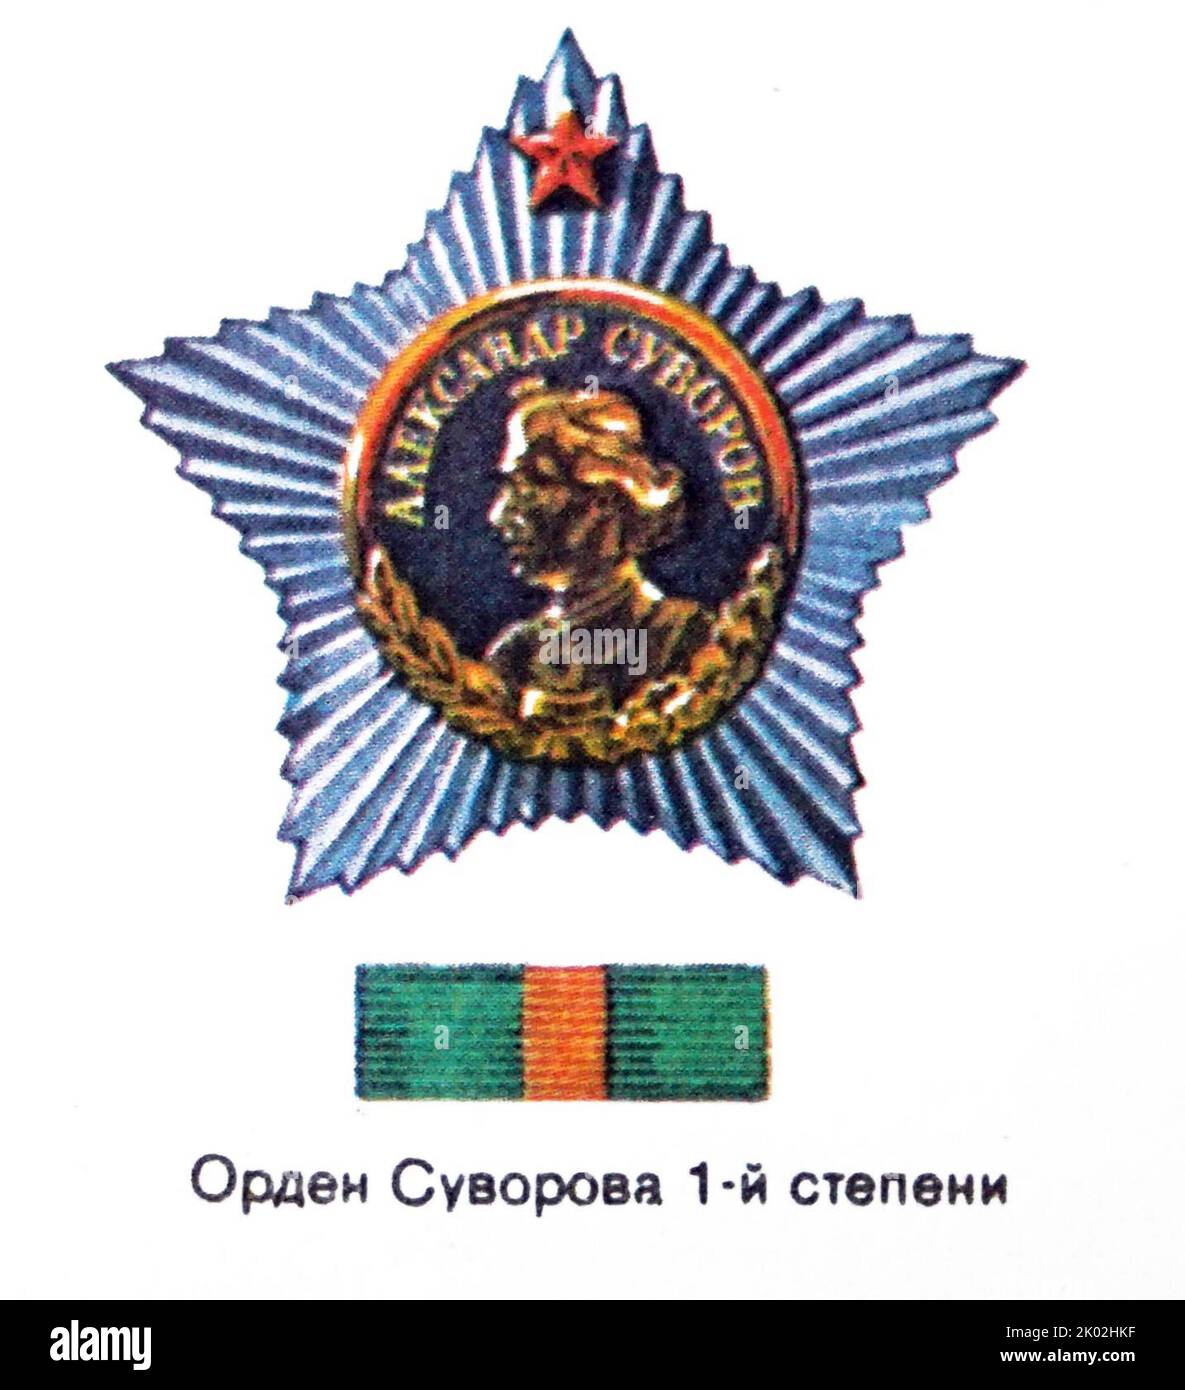 La Medaglia di Suvorov è una decorazione di Stato della Federazione Russa assegnata alle truppe di terra per coraggio in combattimento. Viene nominato in onore del conte maresciallo russo Alexander Suvorov (1729-1800) Foto Stock